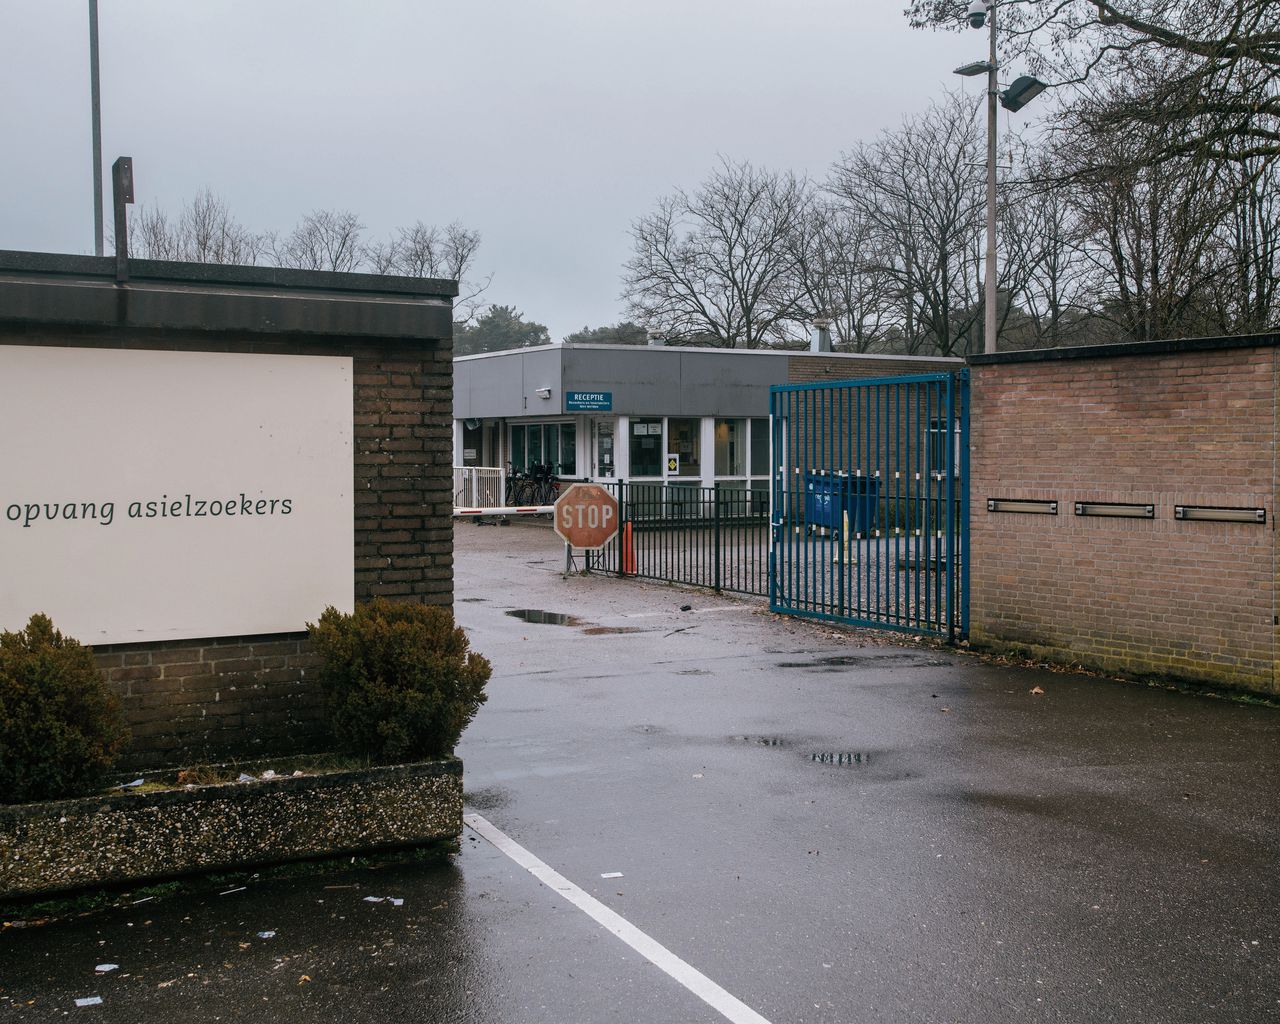 Budel, asielzoekerscentrum Cranendonck. In Budel is een noodverordening afgegeven wegens overlast van asielzoekers.